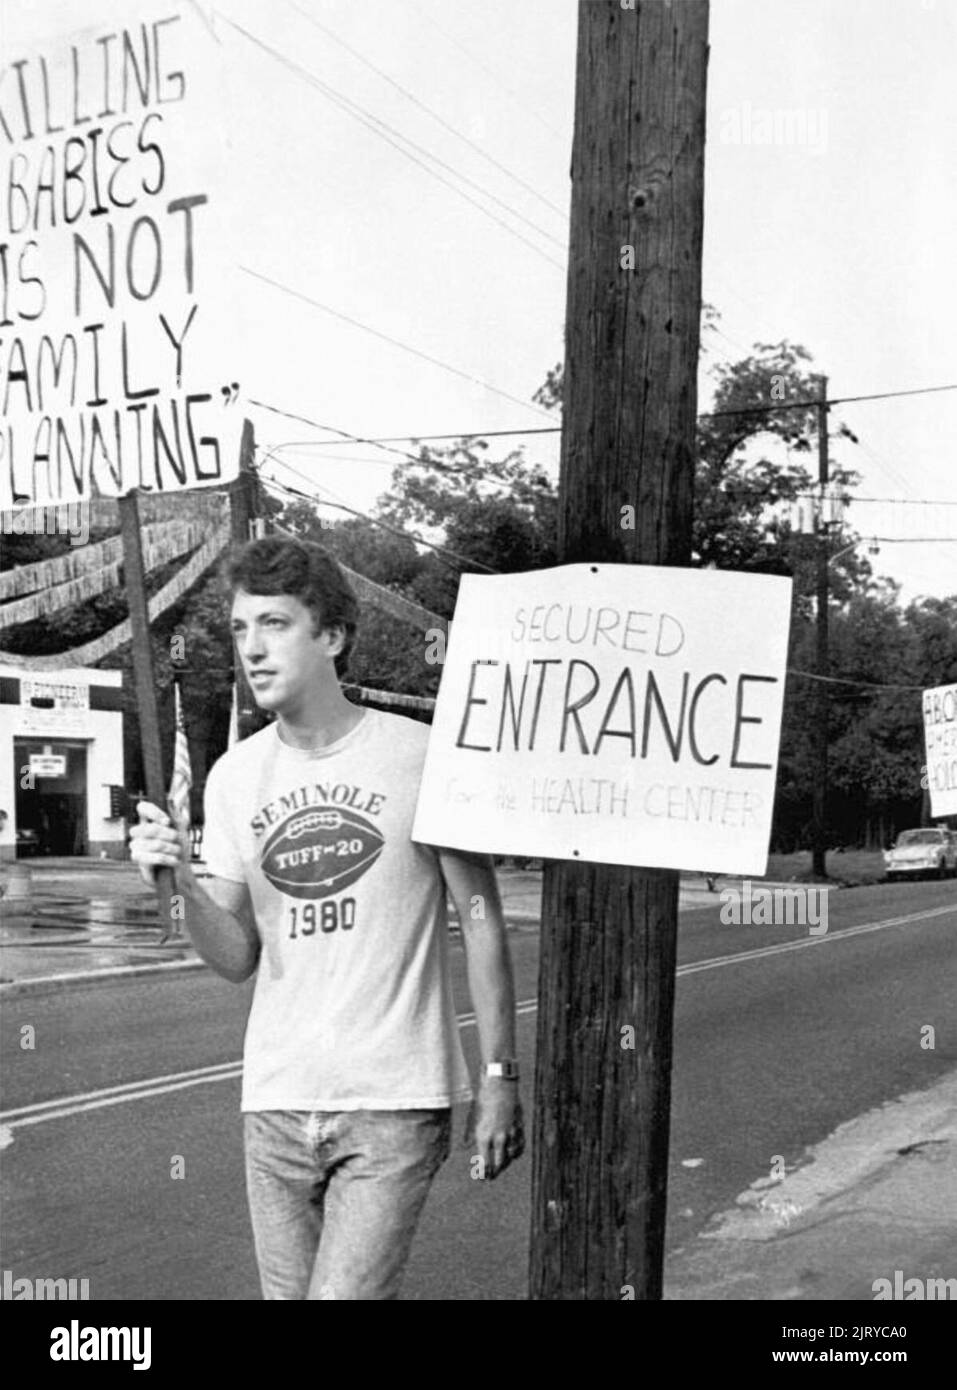 Des manifestants protestent contre le meurtre de bébés par avortement au Tallahassee Feminist Women's Health Centre de Tallahassee, en Floride, près du campus de l'Université d'État de Floride en 1980. (ÉTATS-UNIS) Banque D'Images